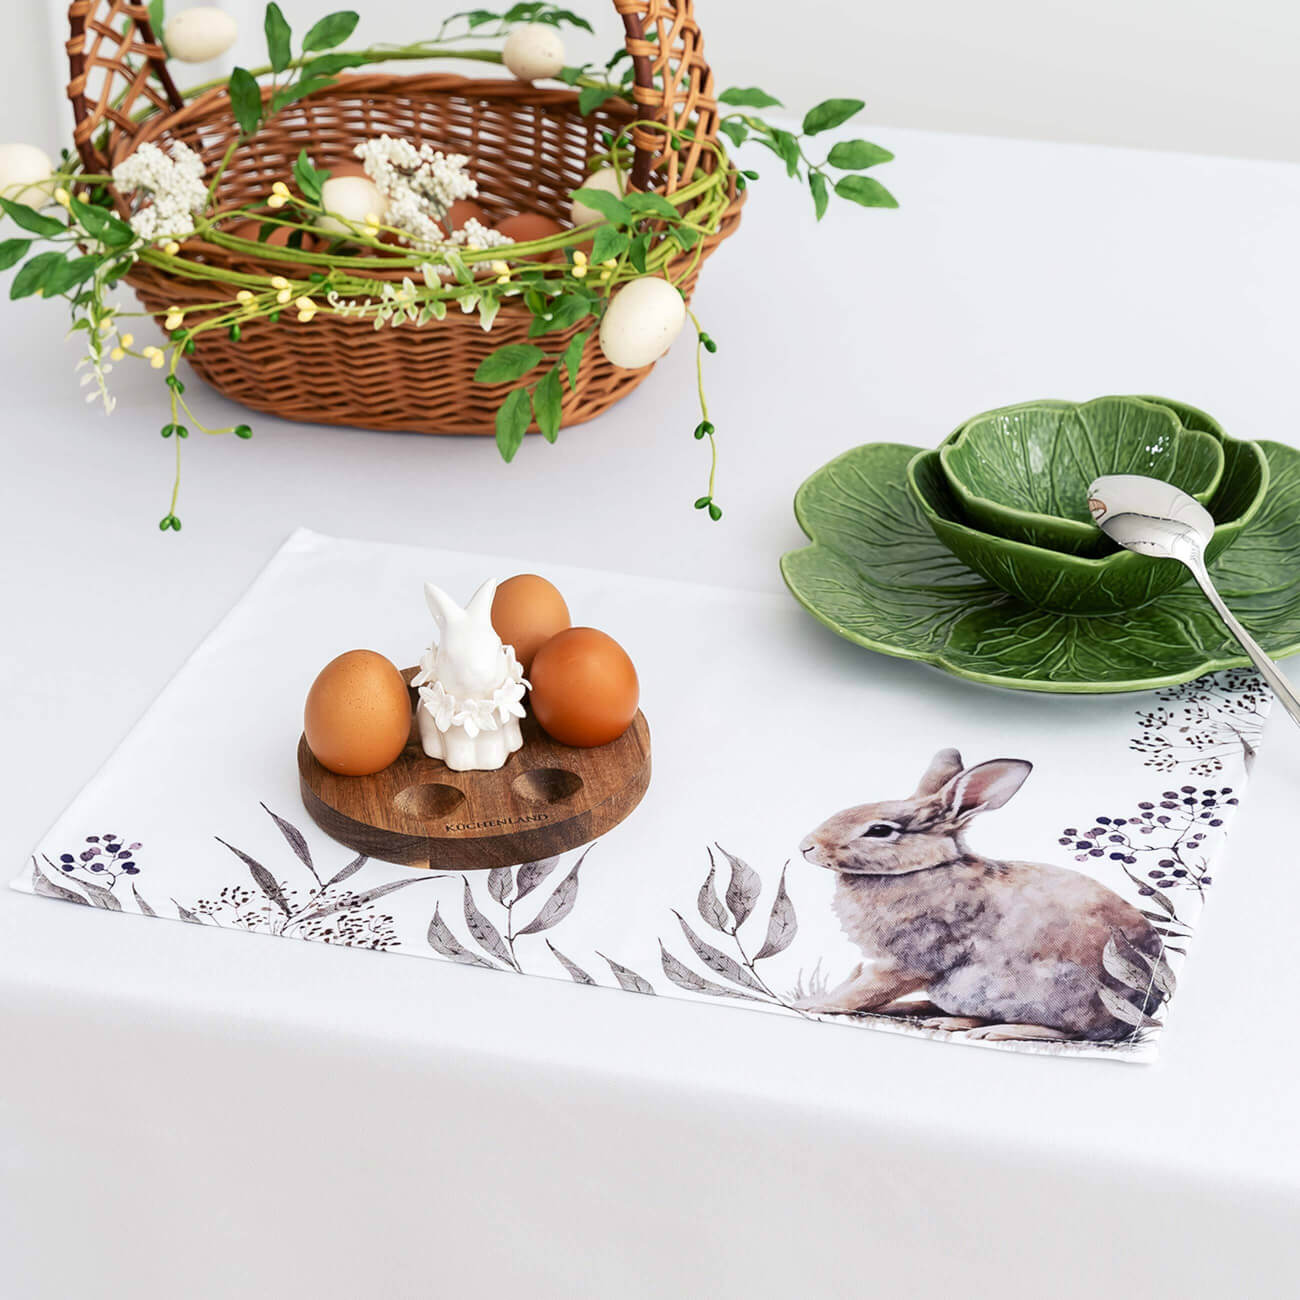 Салфетка под приборы, 30x45 см, полиэстер, белая, Кролик в листве, Natural Easter салфетка для кухни ladina